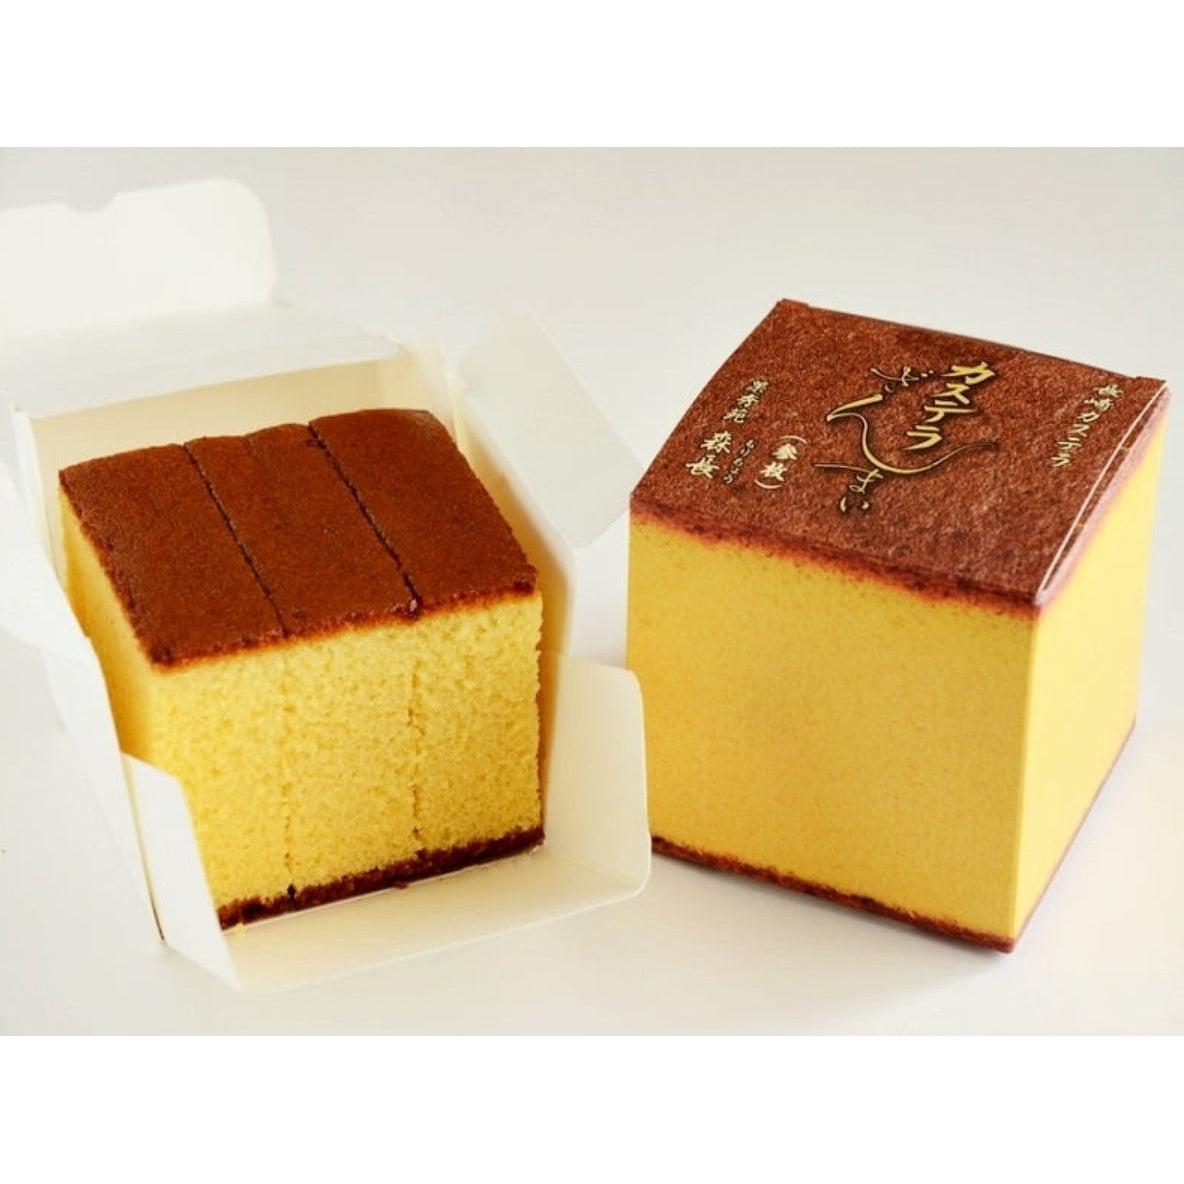 Japanese Castella Cake (Wagashi Sponge Cake) - A Spicy Perspective